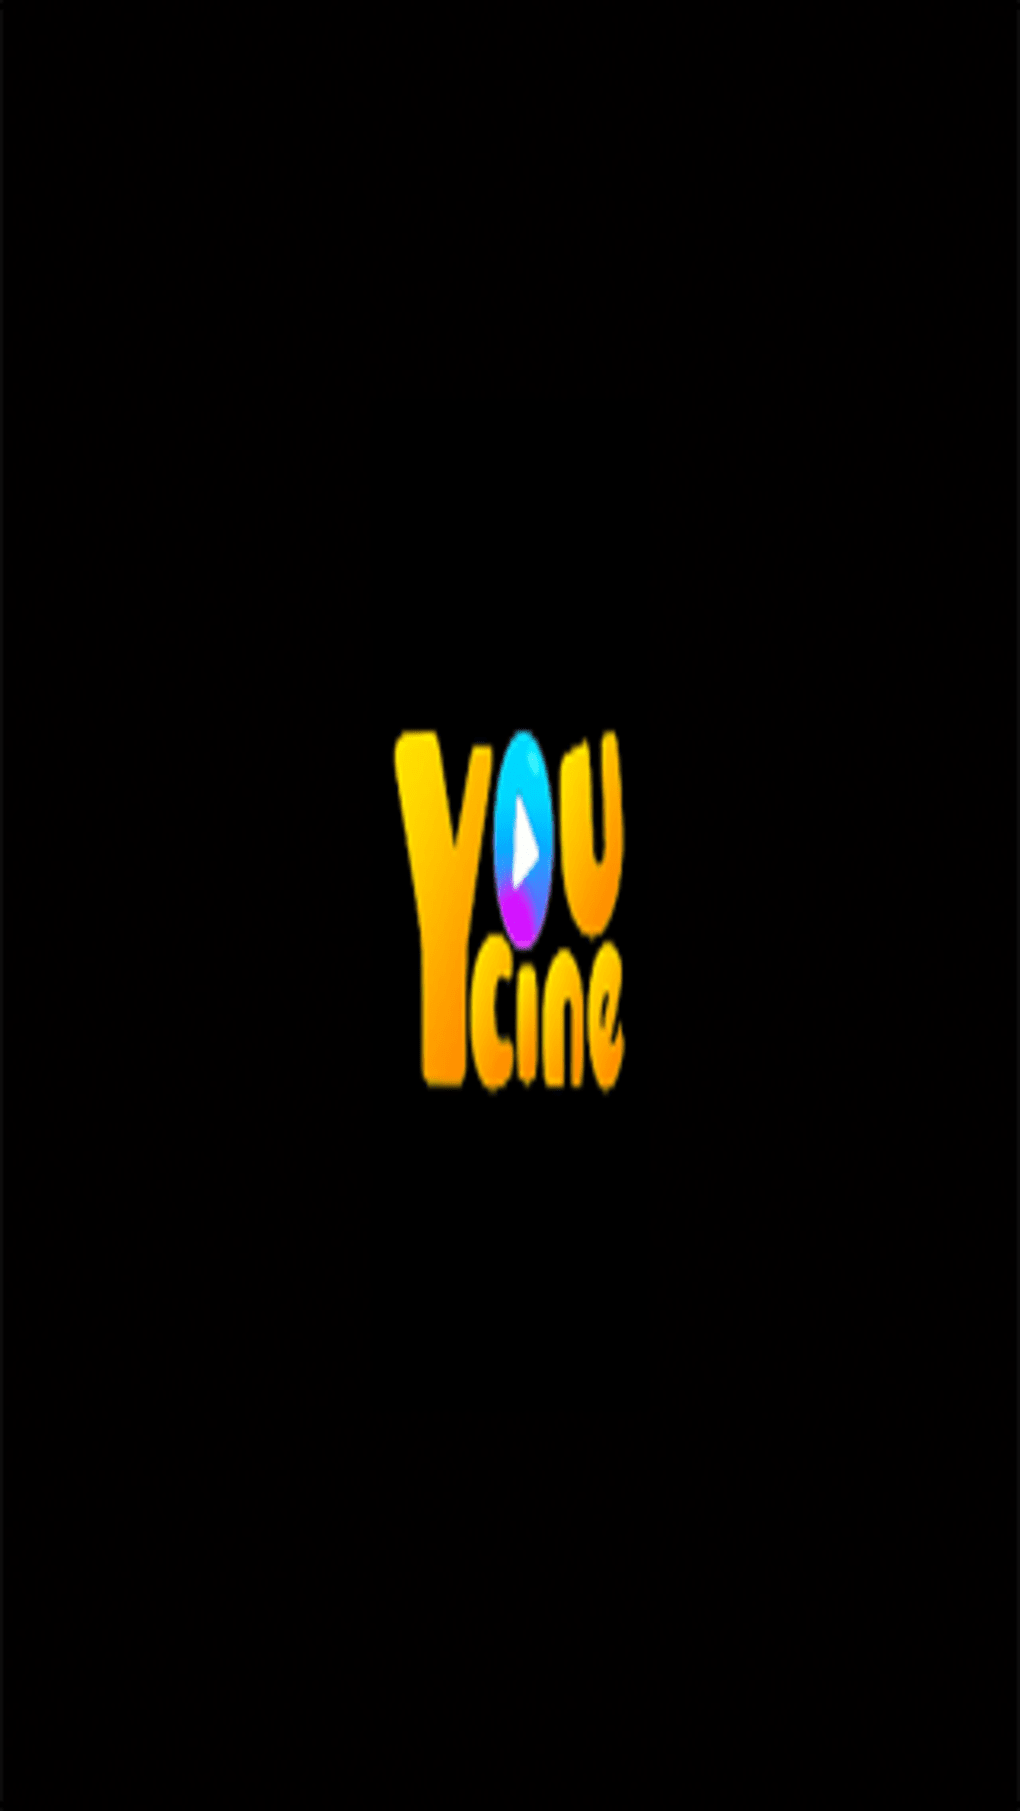 na minha Bio tem o link do YouCine app para assistir filmes e séries d